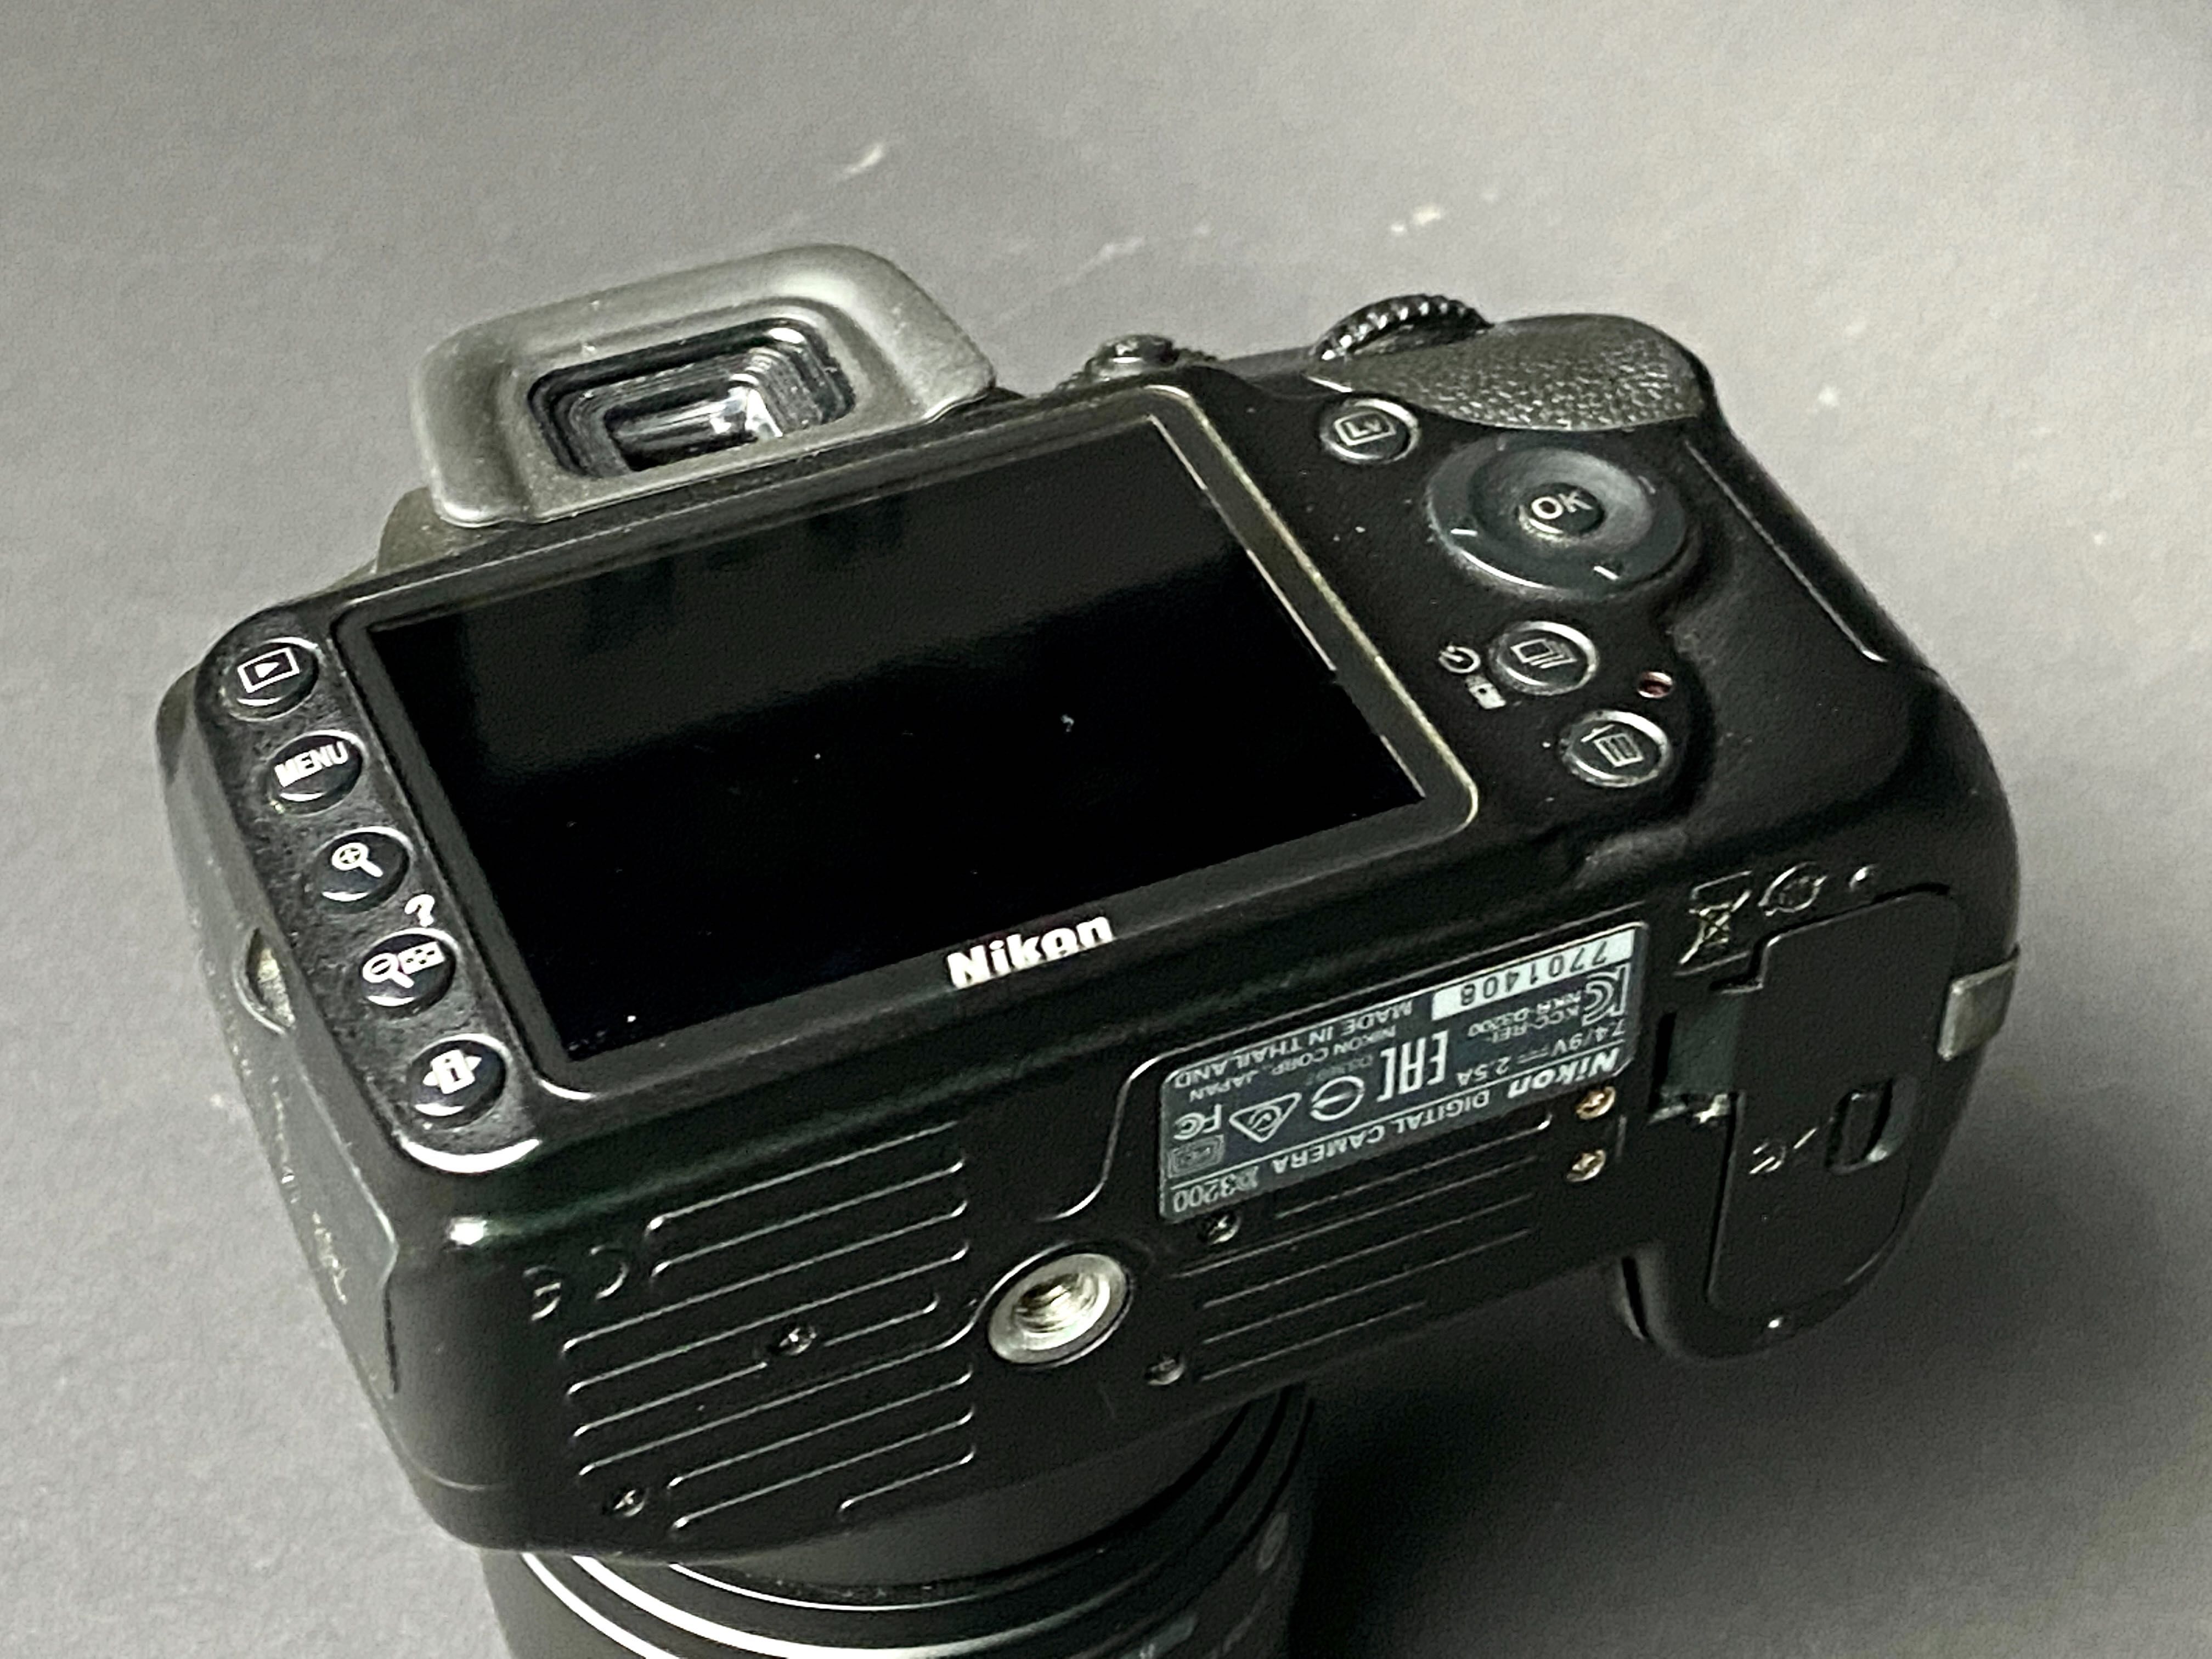 б/у Nikon D3200 з об'єктивом Nikkor 18-55mm у гарному стані